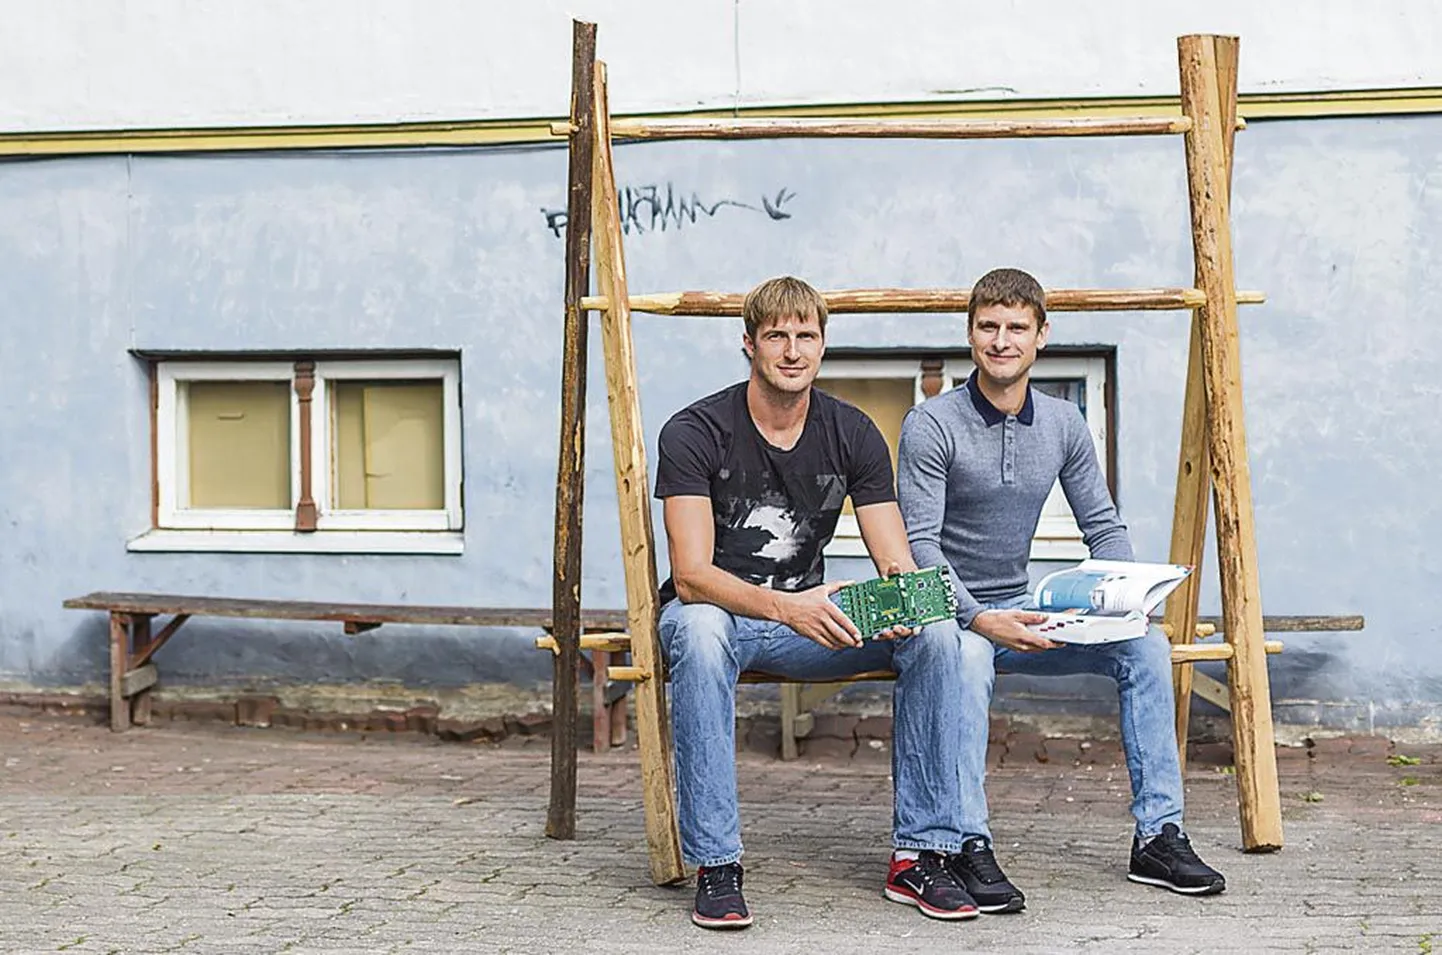 Noored mehed Tamar Nassar (vasakul) ja Mirko Metsaoru (paremal) leiutavad üha uusi taimekasvatusautomaatika seadmeid.